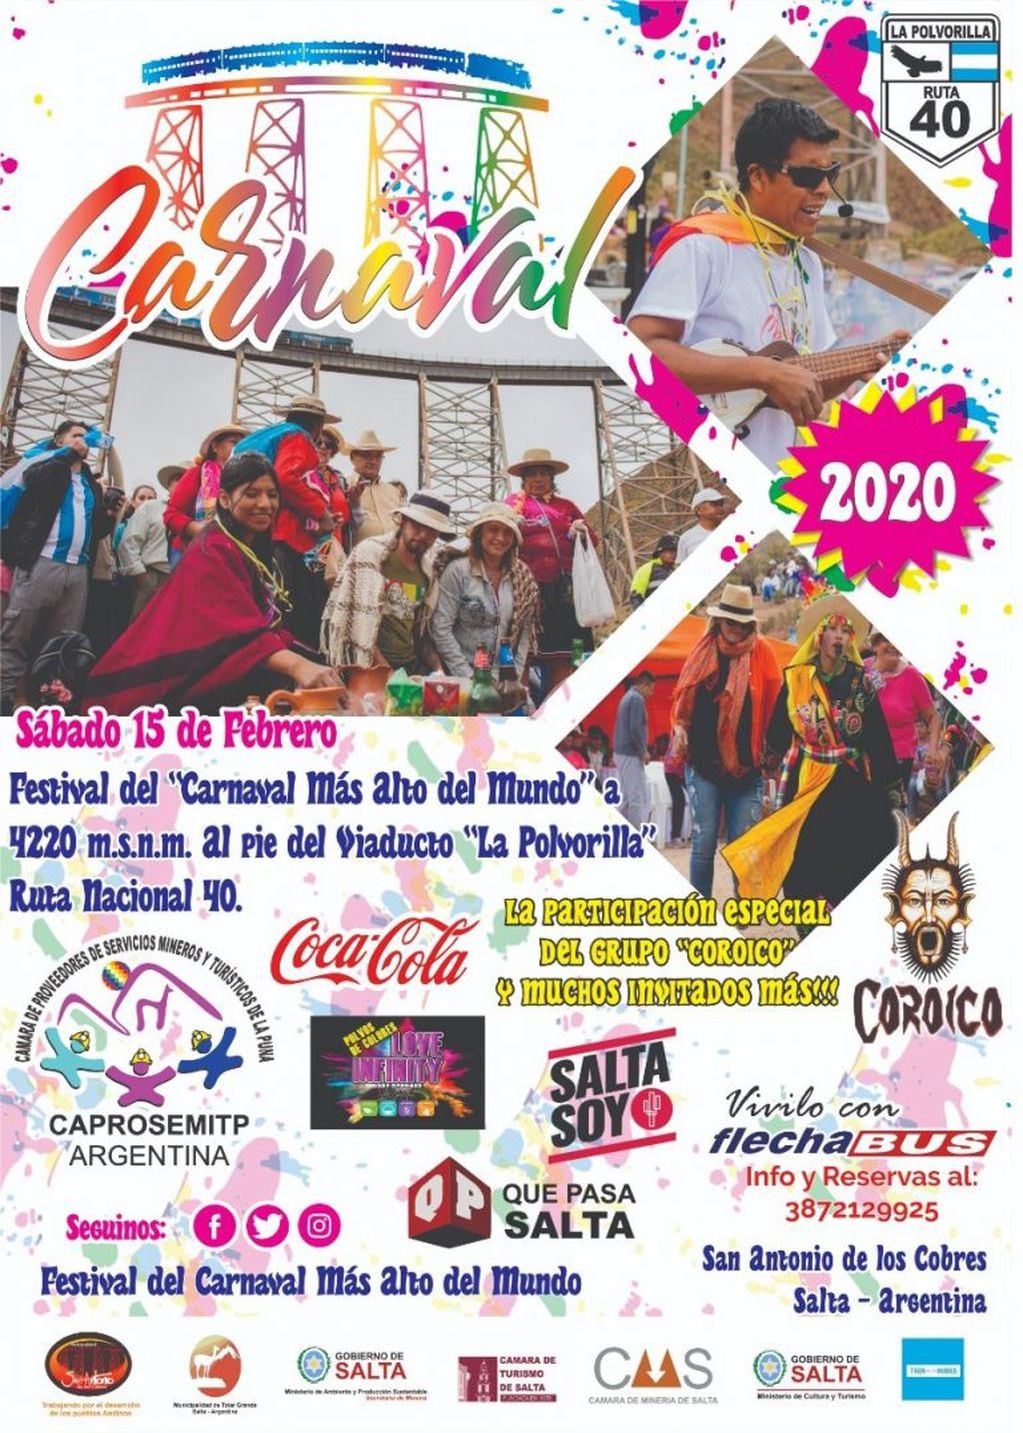 Llega la cuarta edición del Carnaval más alto del Mundo (Facebook Carnaval Más Alto del Mundo)